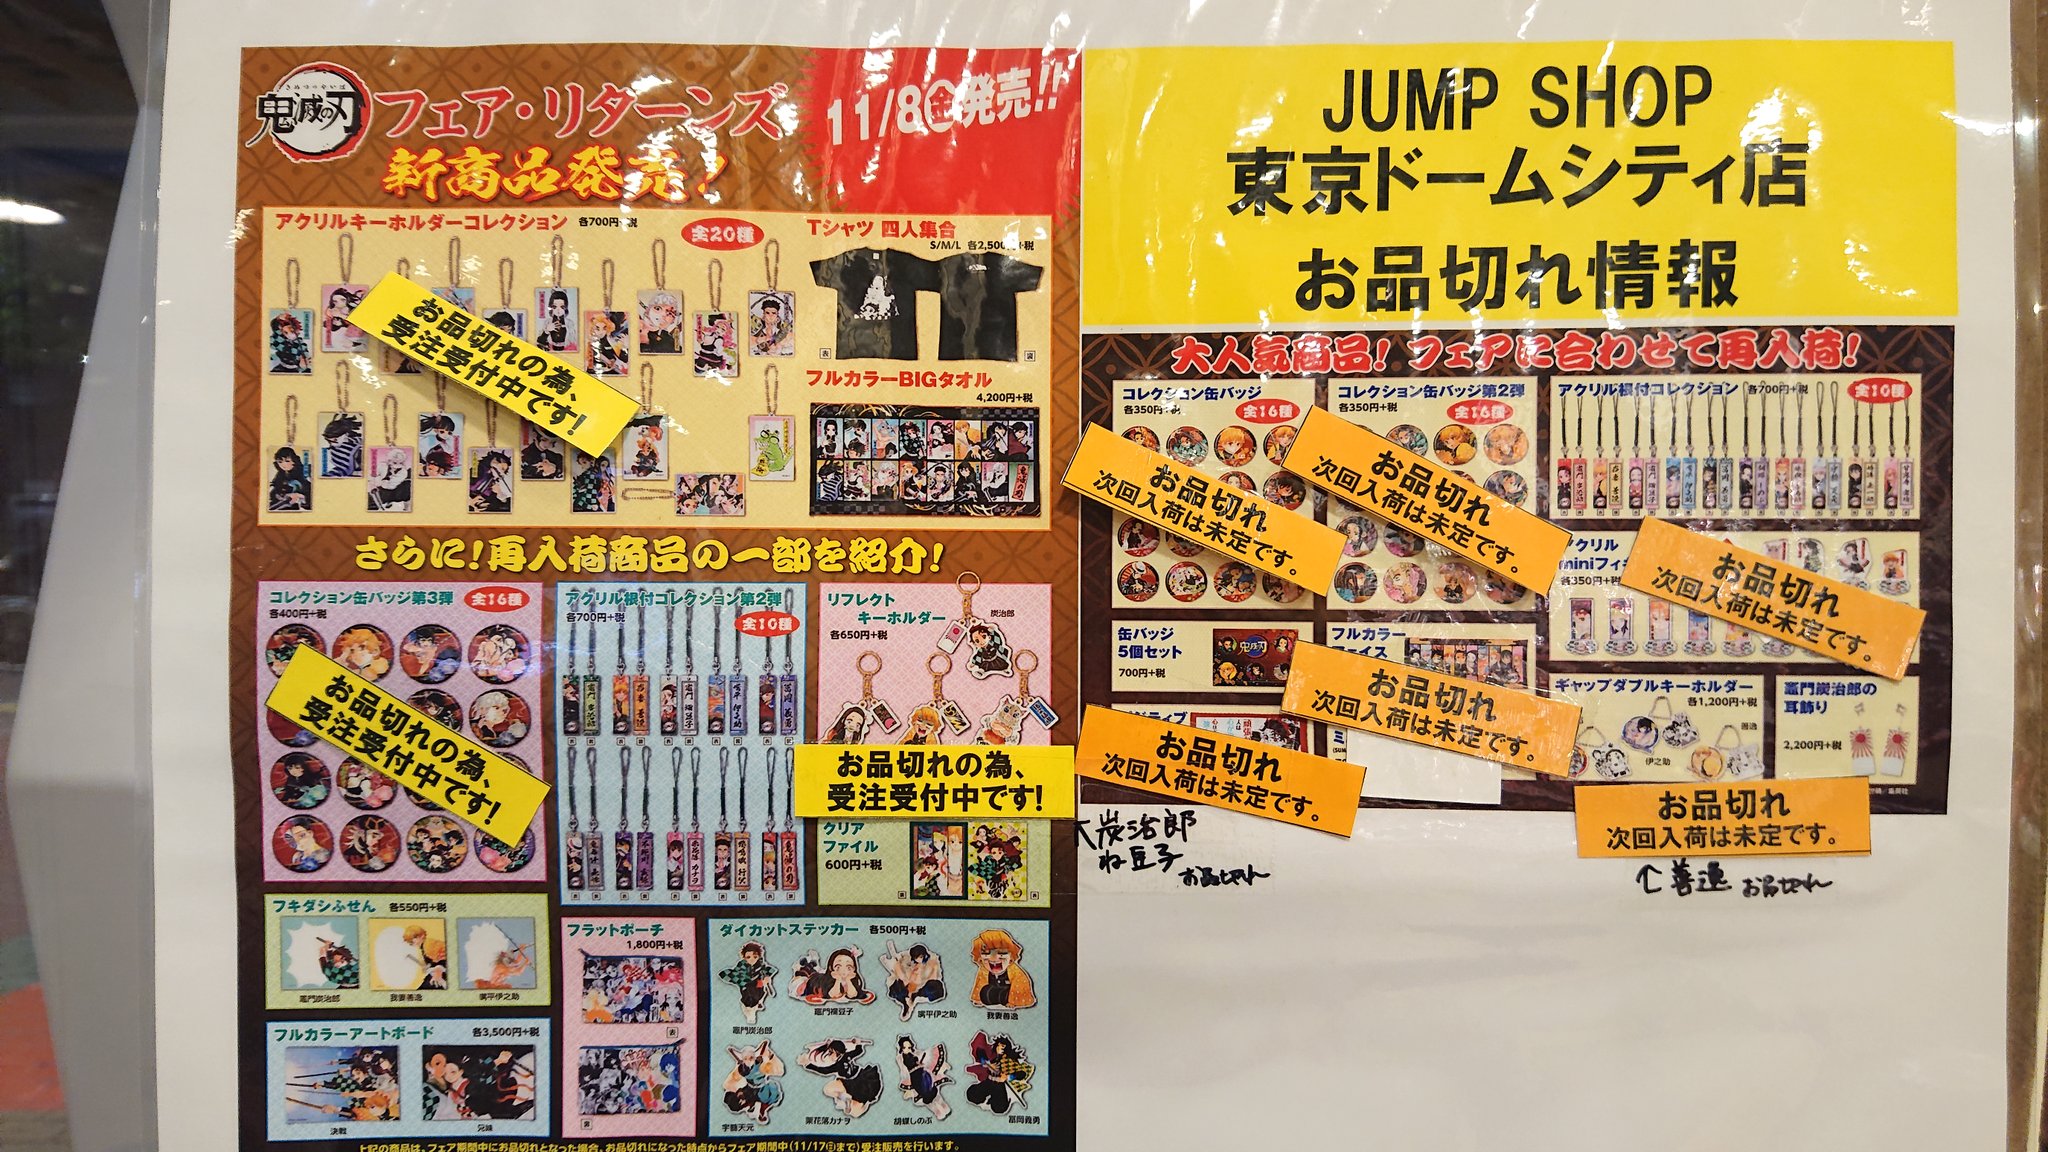 ジャンプショップ Jump Shop 公式 鬼滅の刃フェア リターンズ 在庫状況 Jump Shop東京ドームシティ店の在庫状況は 写真の通りとなります 何卒よろしくお願いいたします T Co Wp2piwsbzh Twitter